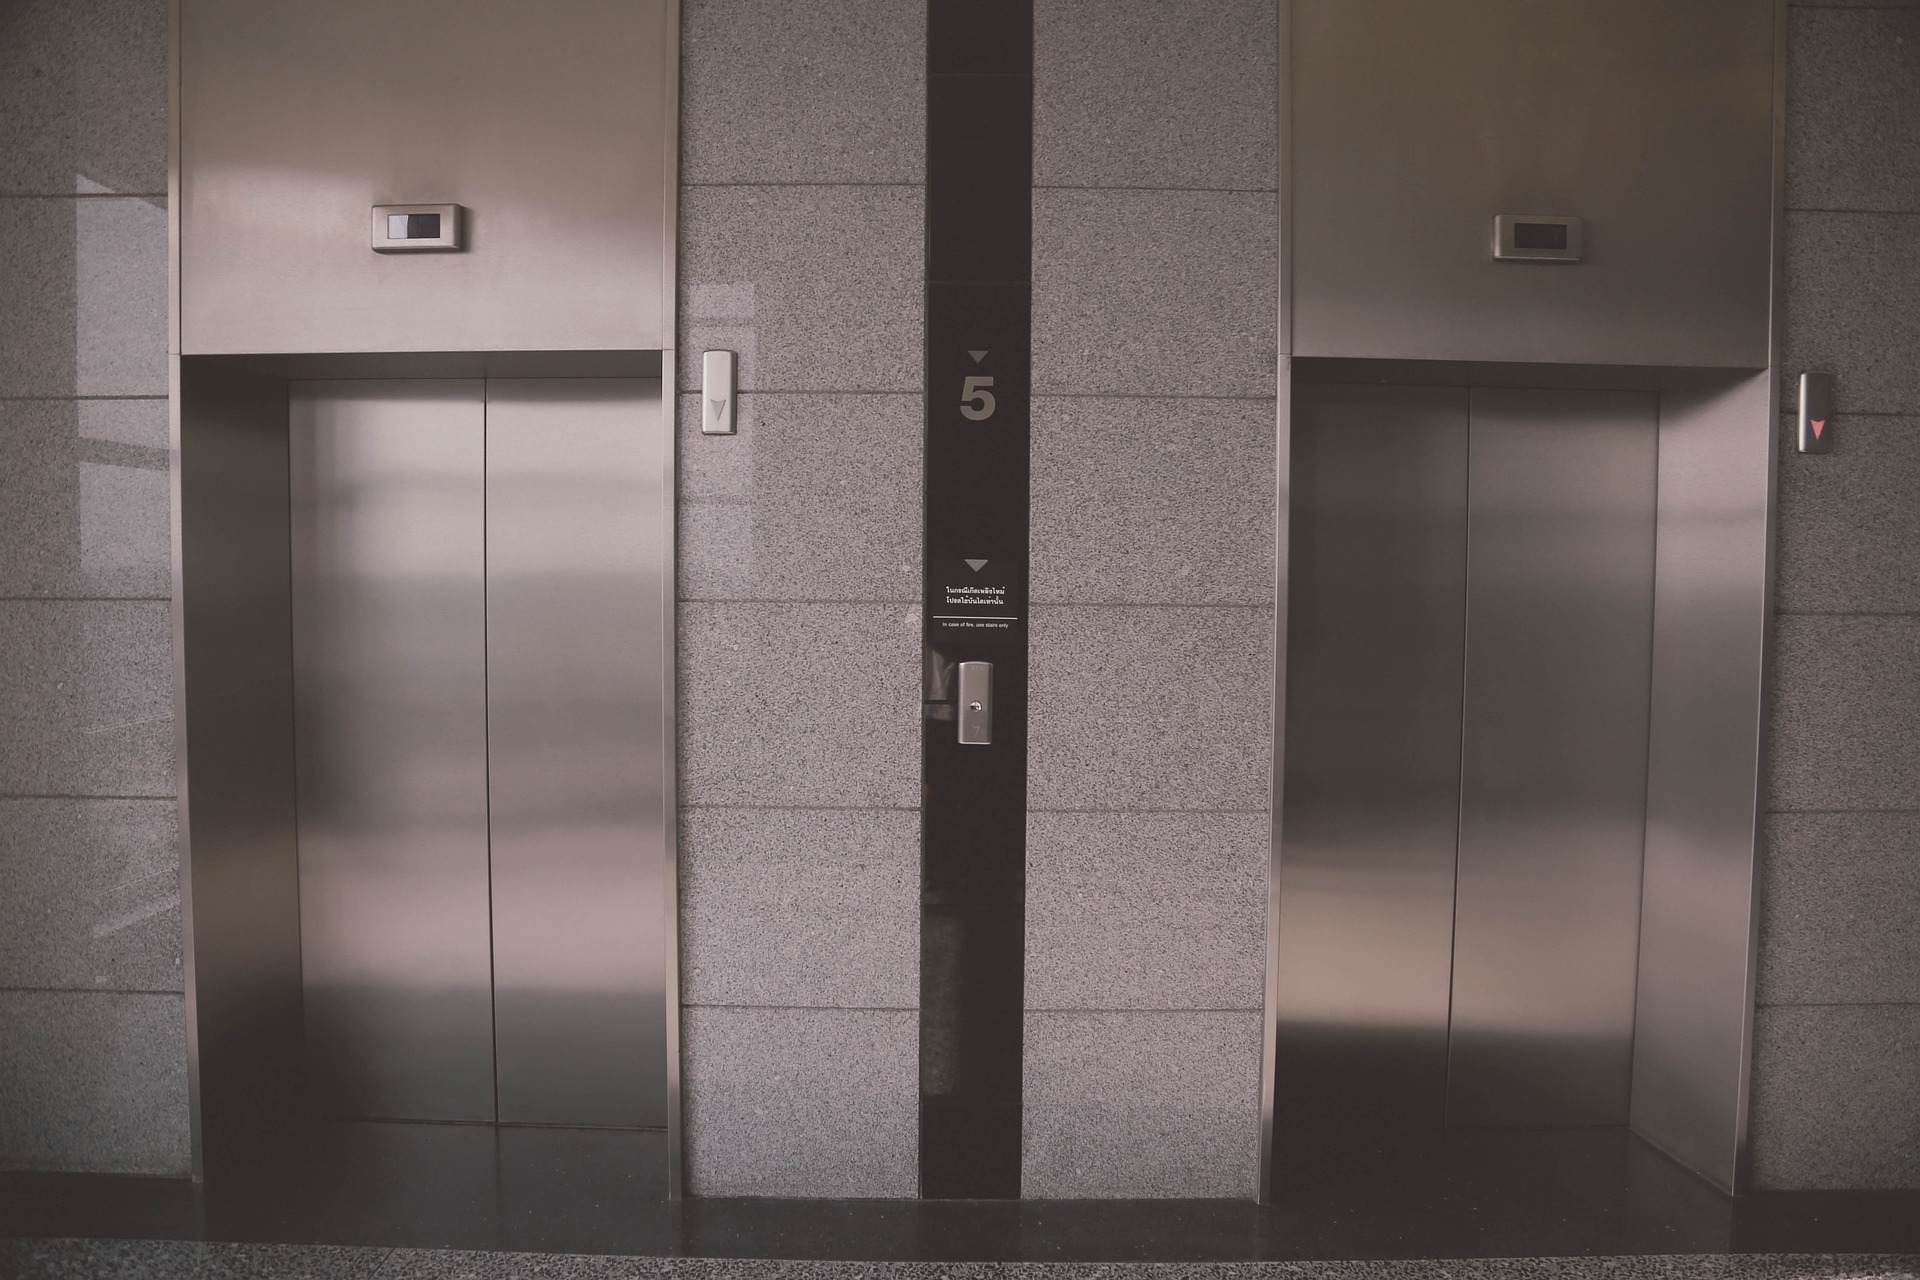 エレベーター設置工の石綿ばく露作業について